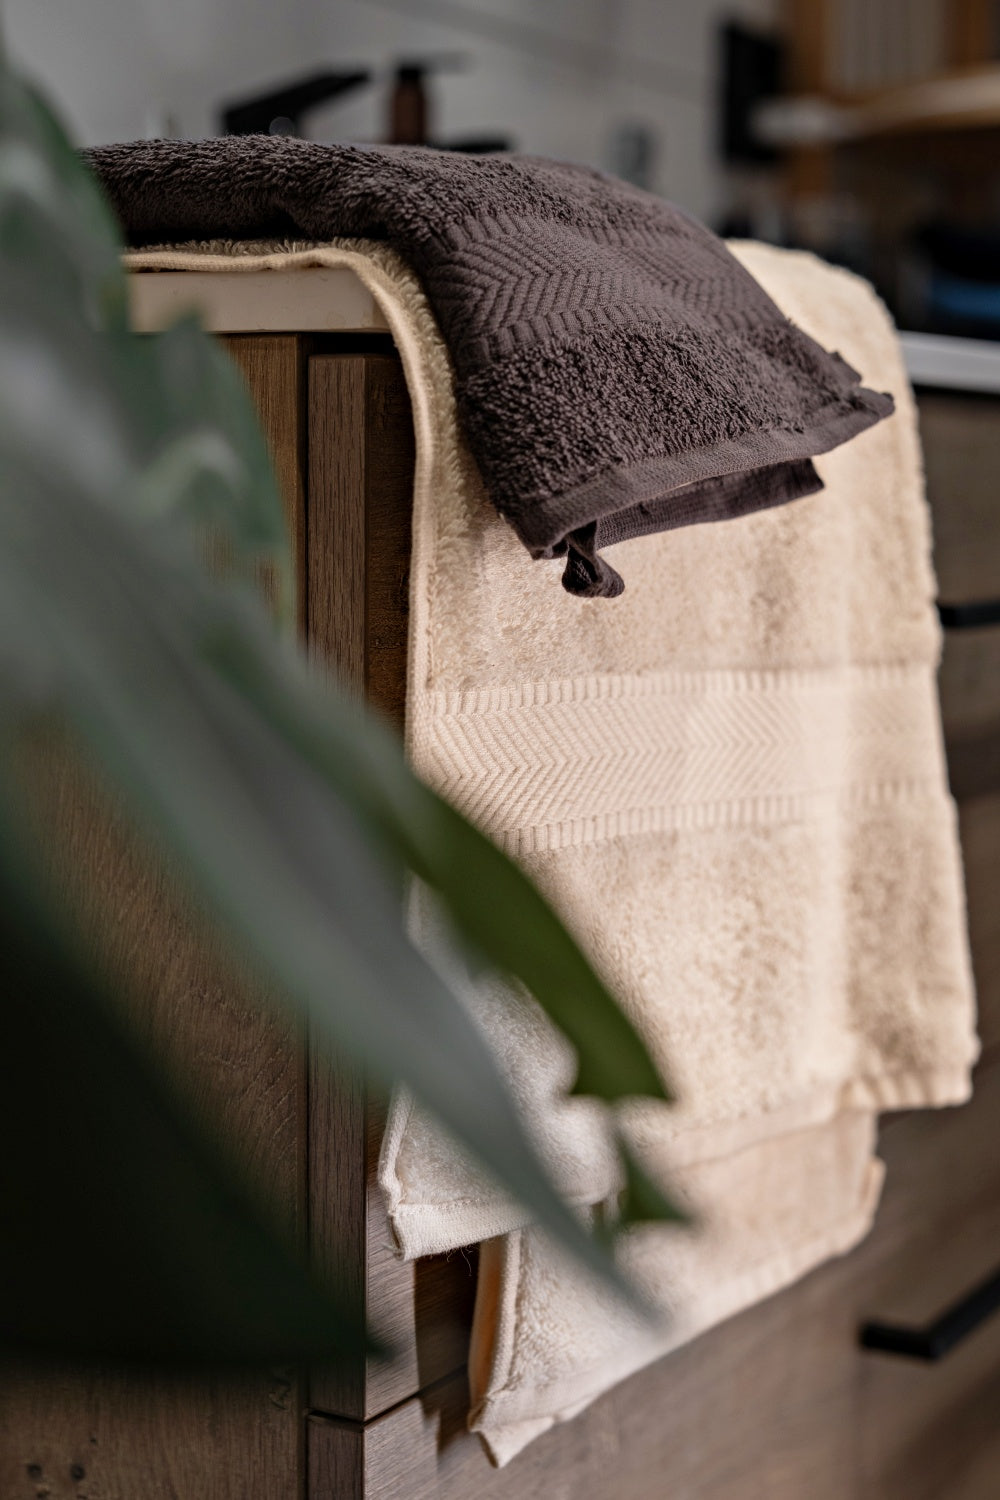 Håndklær i økologisk bomull, naturhvit og antrasitt. Foto: Alexander Marvin - Flash Studio.